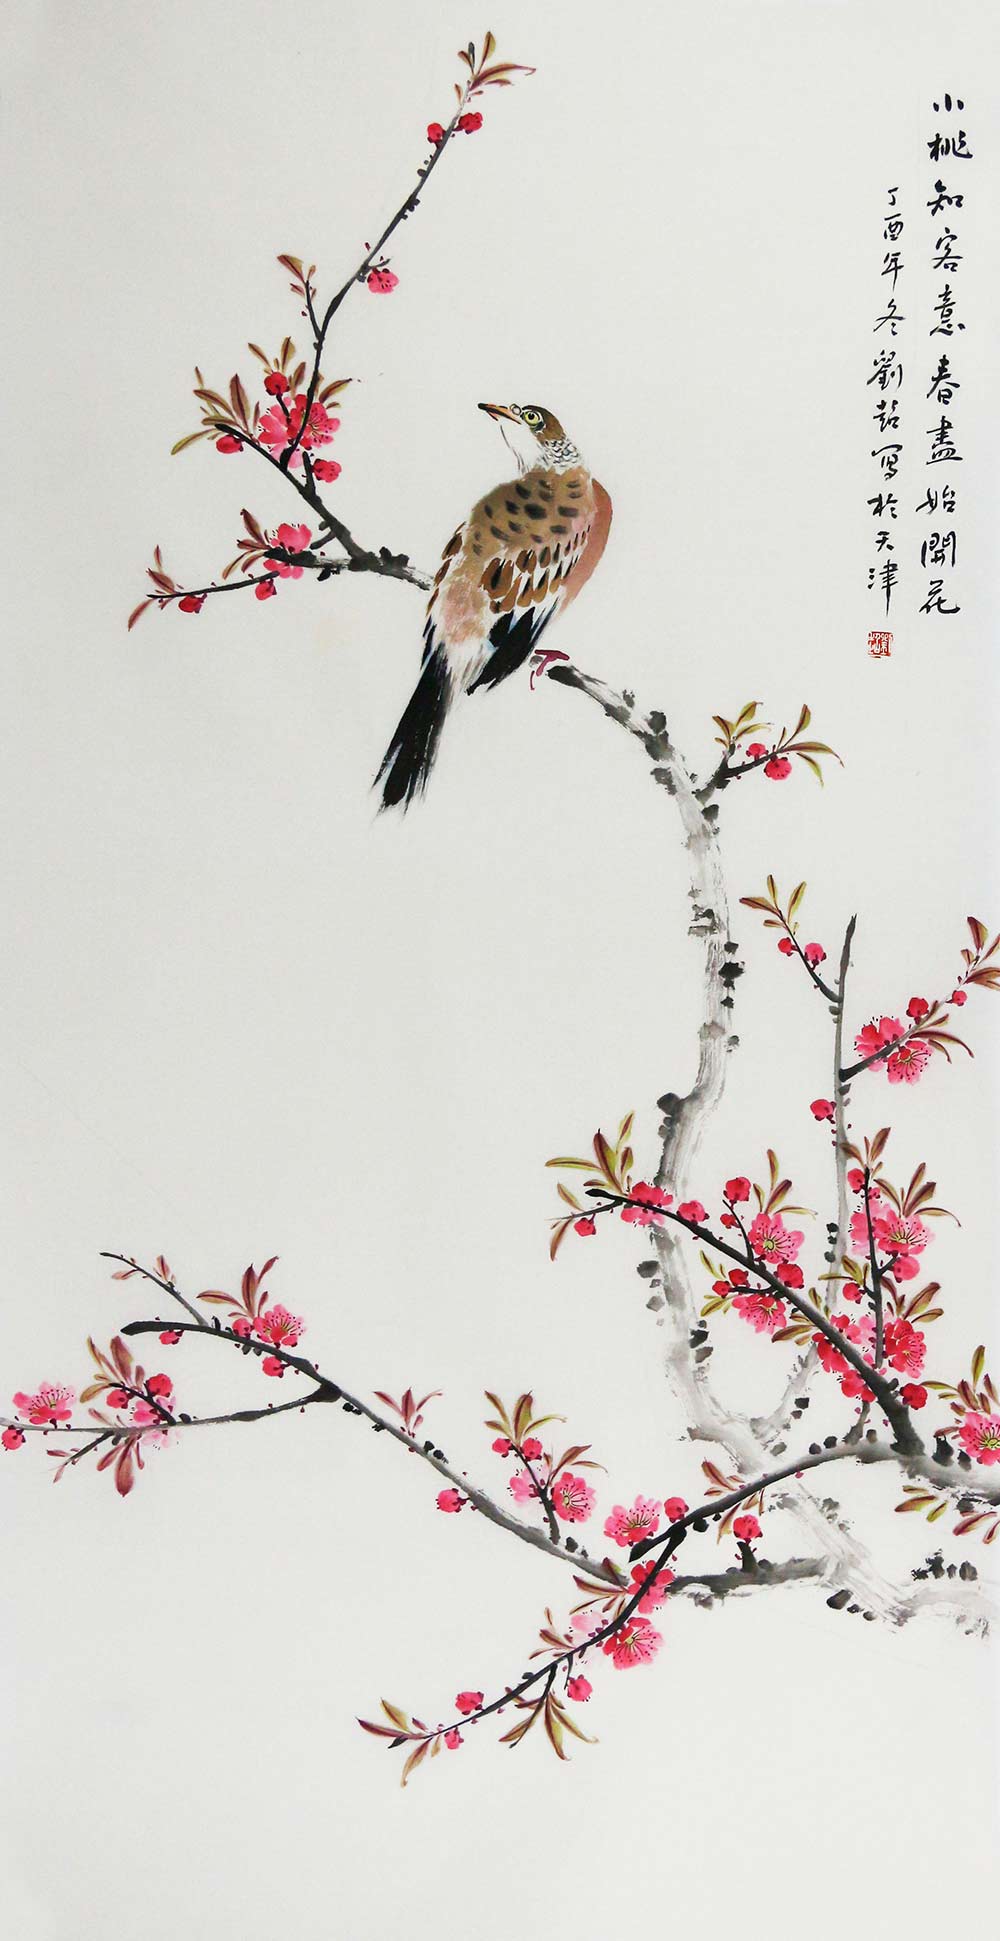 文化部中国国际书画艺术研究会创作基地画家,霍春阳传统绘画工作室